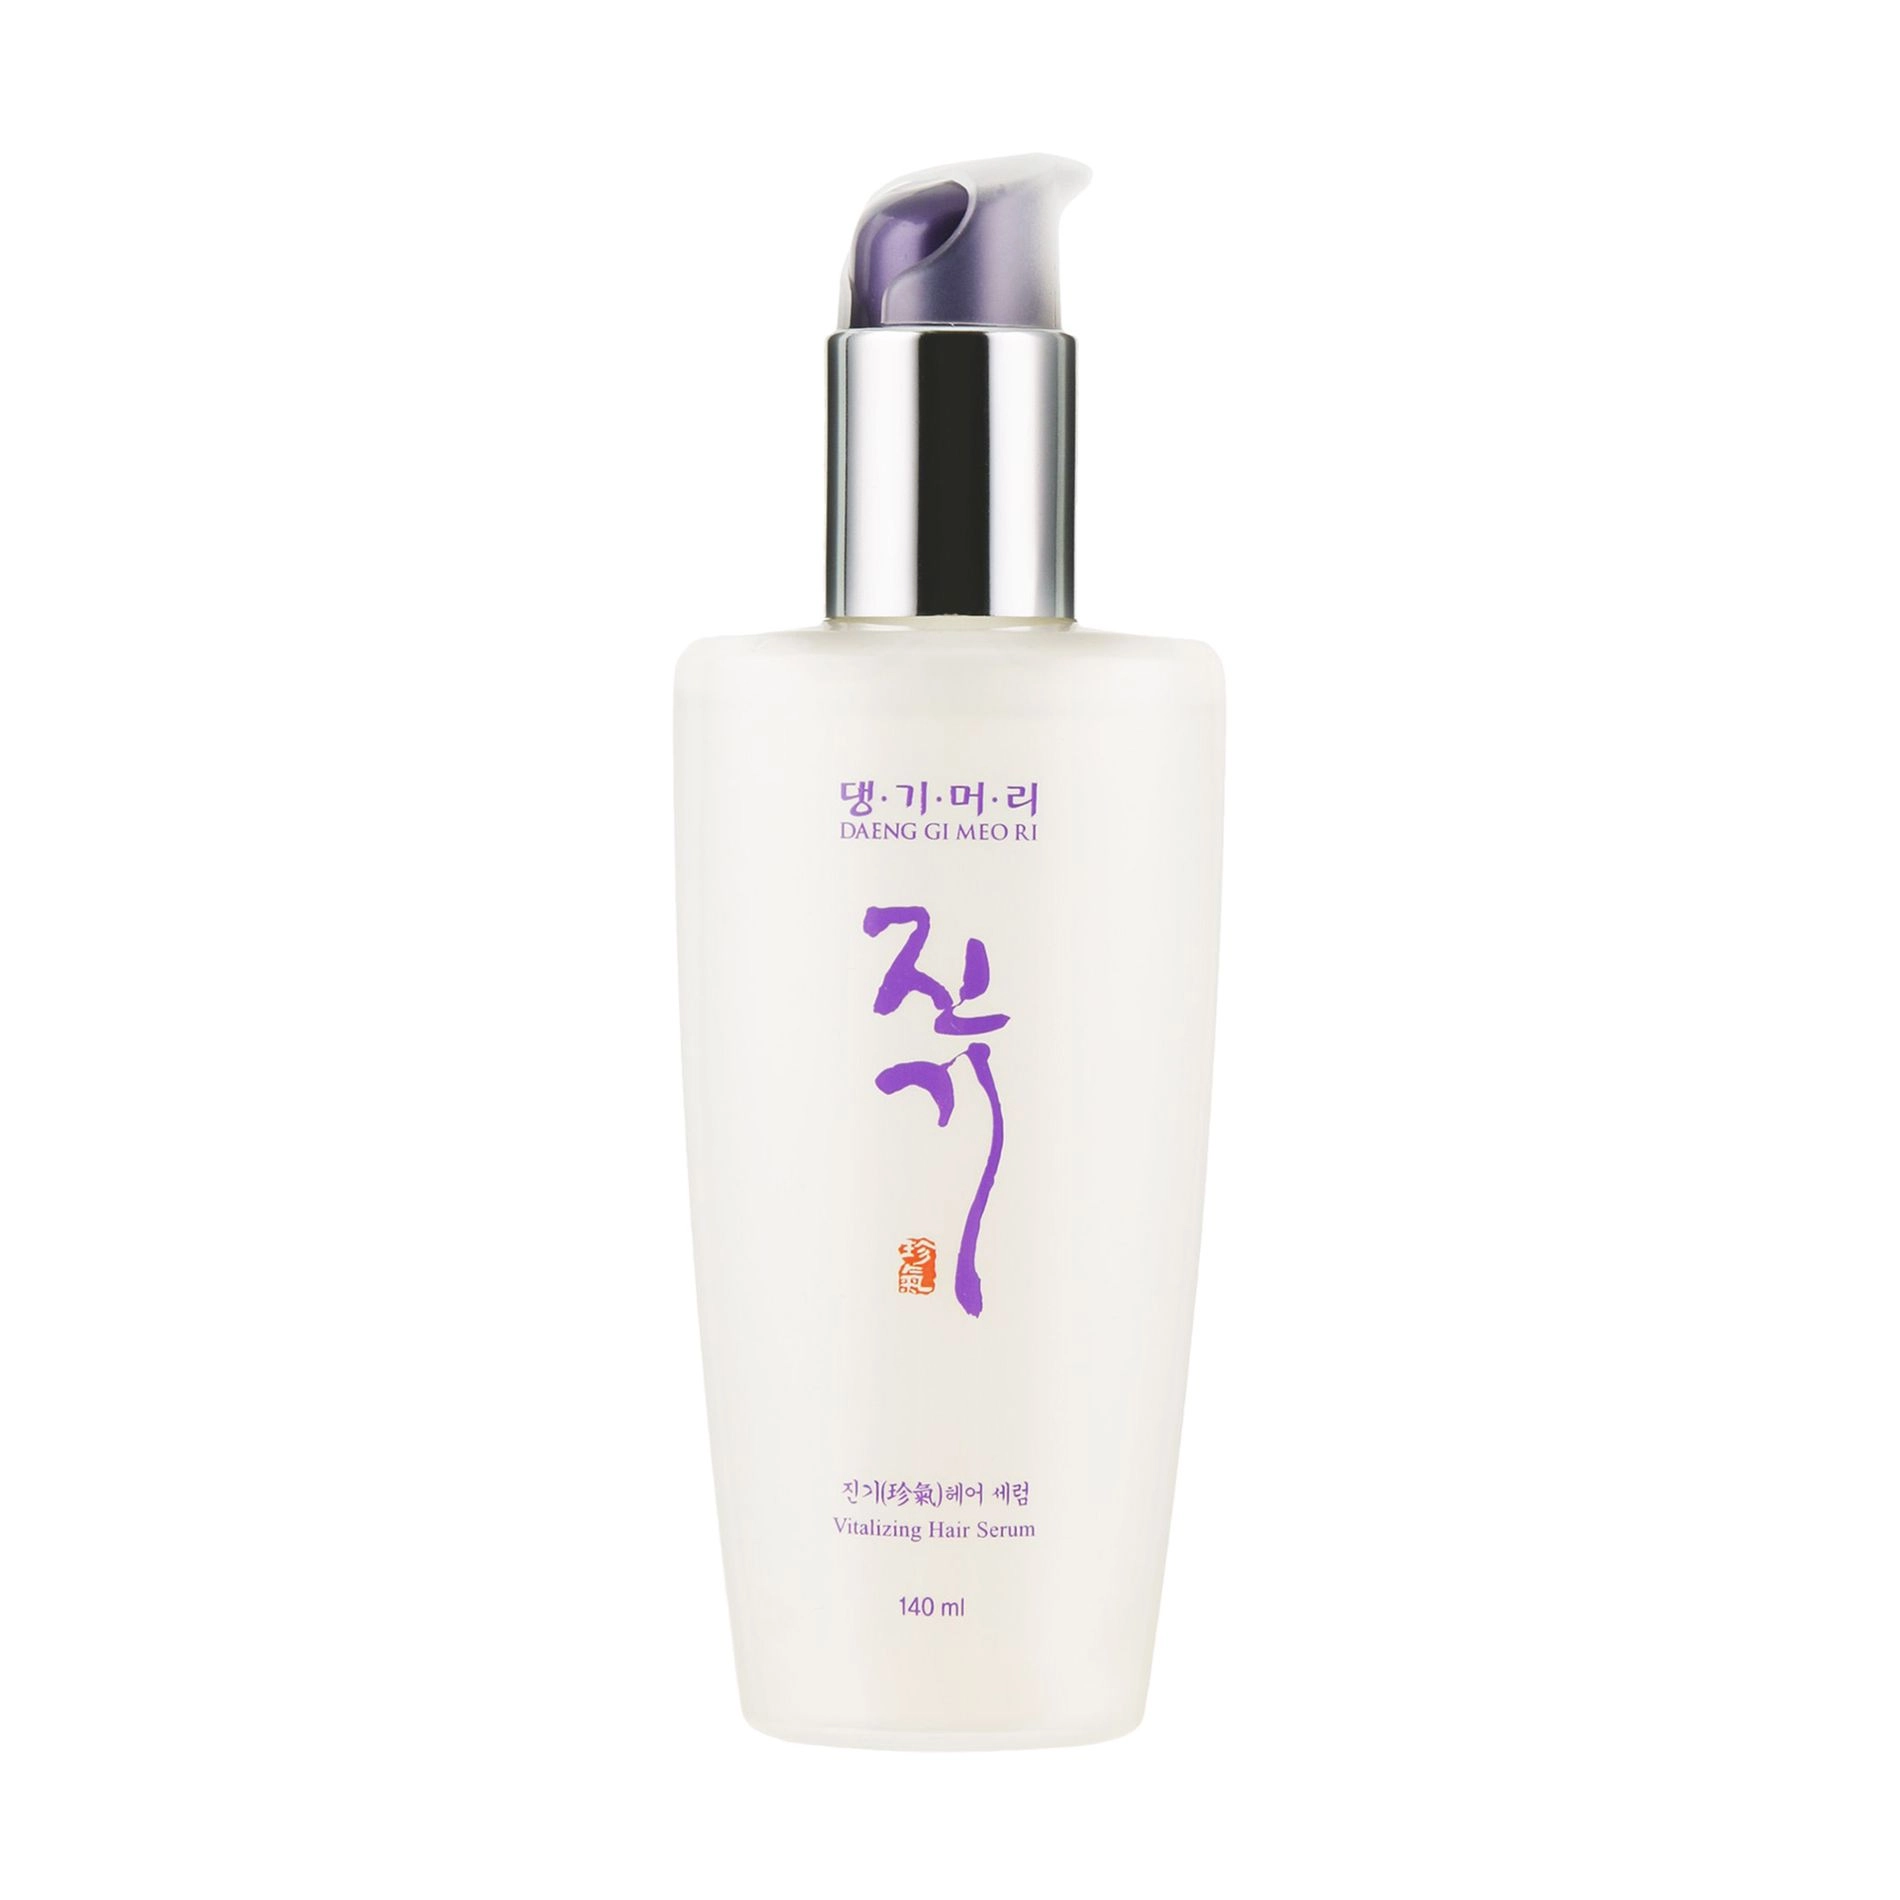 Відновлююча сироватка для волосся - Daeng Gi Meo Ri Vitalizing Hair Serum, 140 мл - фото N3